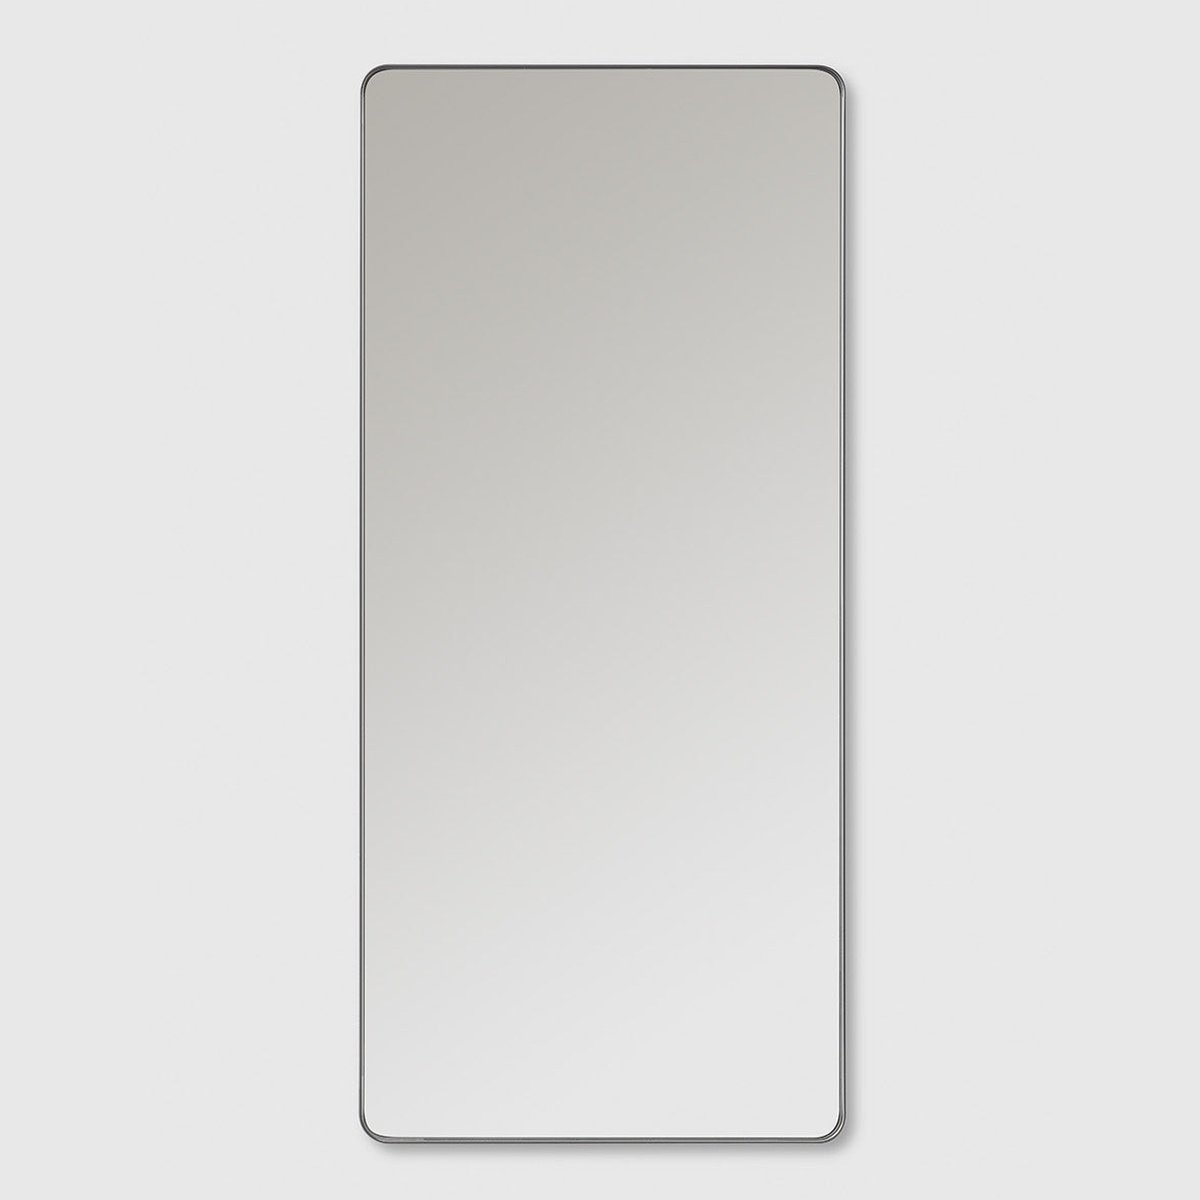 Se HAVEN M6 Frame 45x100cm spejl med belysning - brushed metal hos Bad&Design